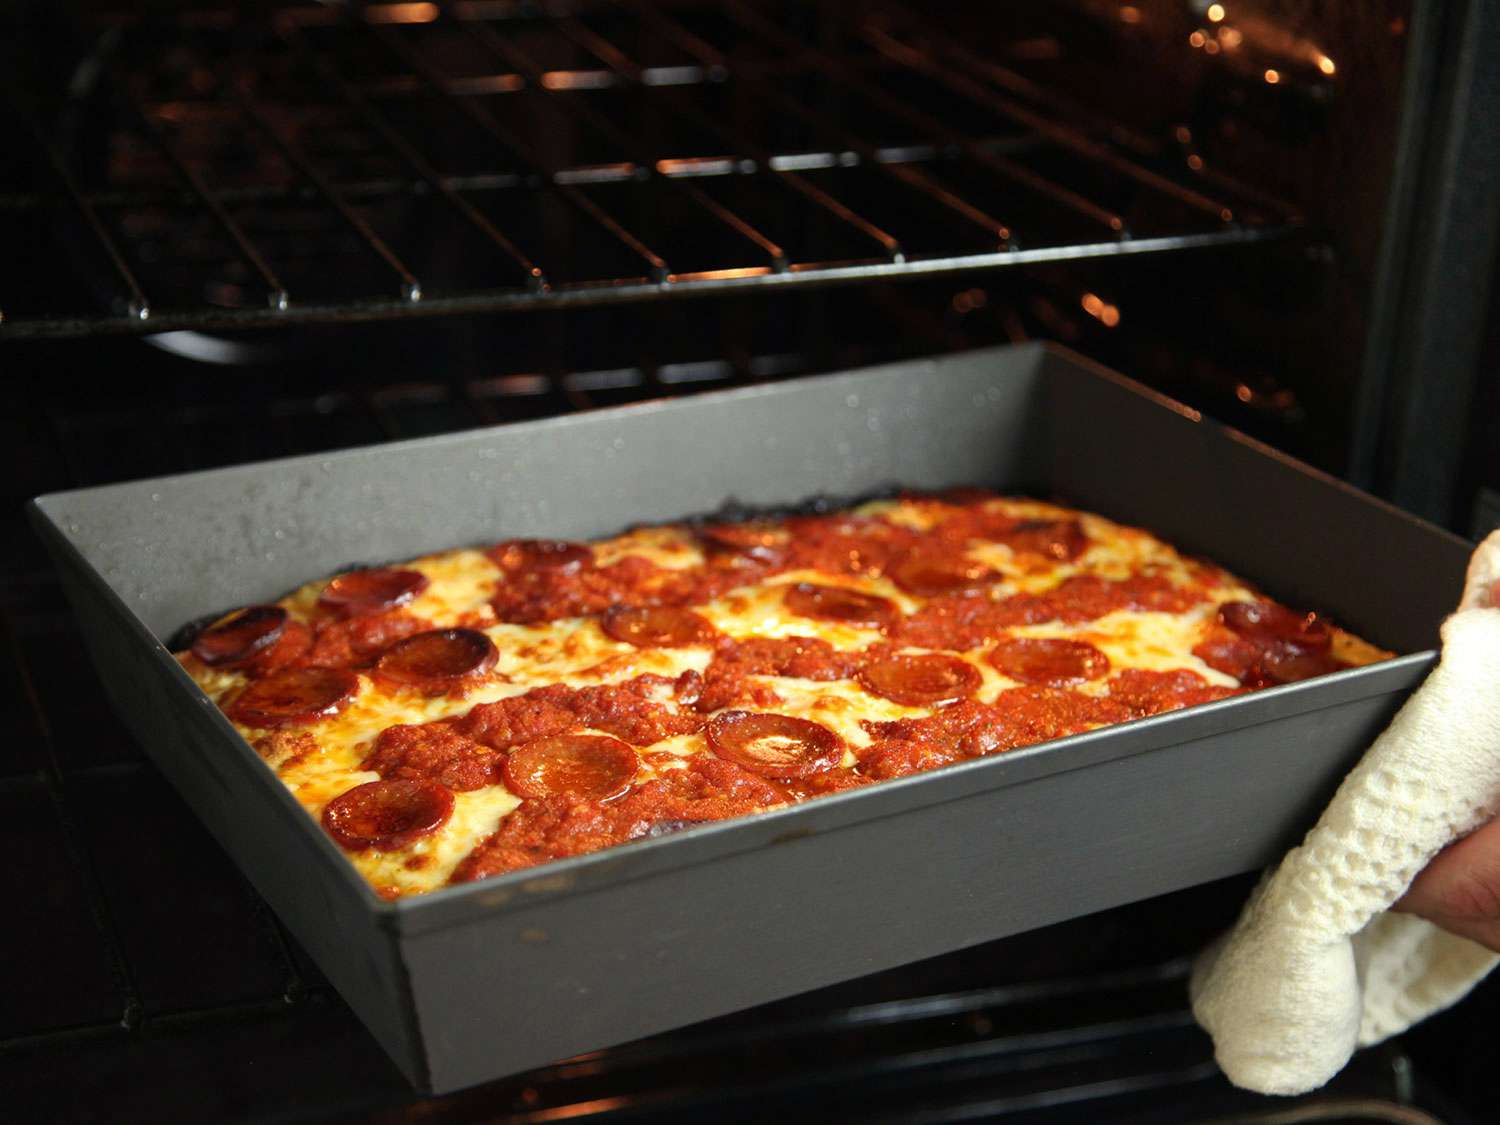 用毛巾挡住手，把烤好的底特律披萨从烤箱里拿出来gydF4y2Ba